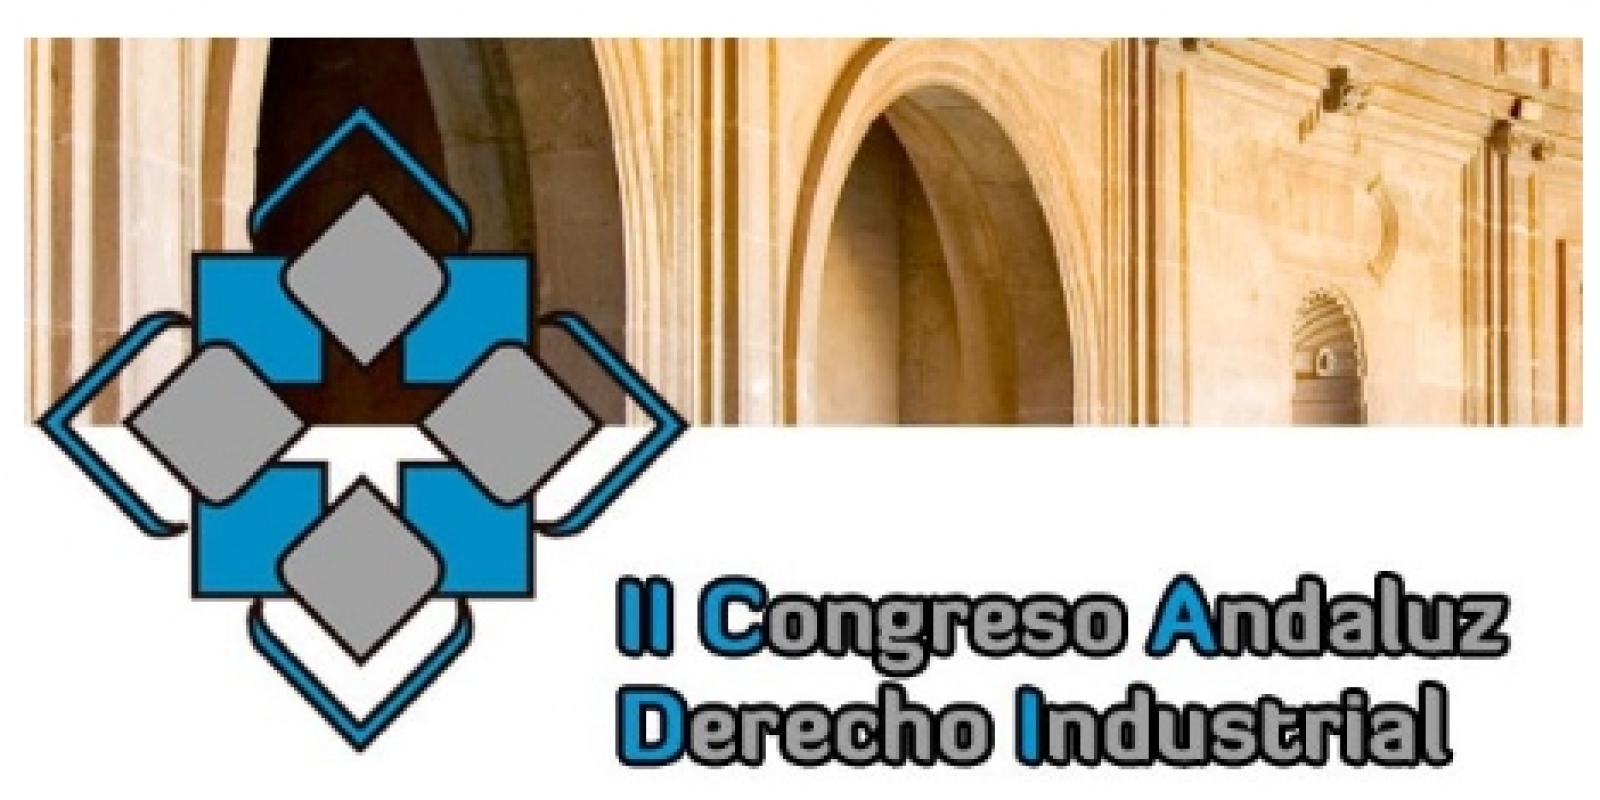 Segunda edición del Congreso Andaluz de Derecho Industrial.